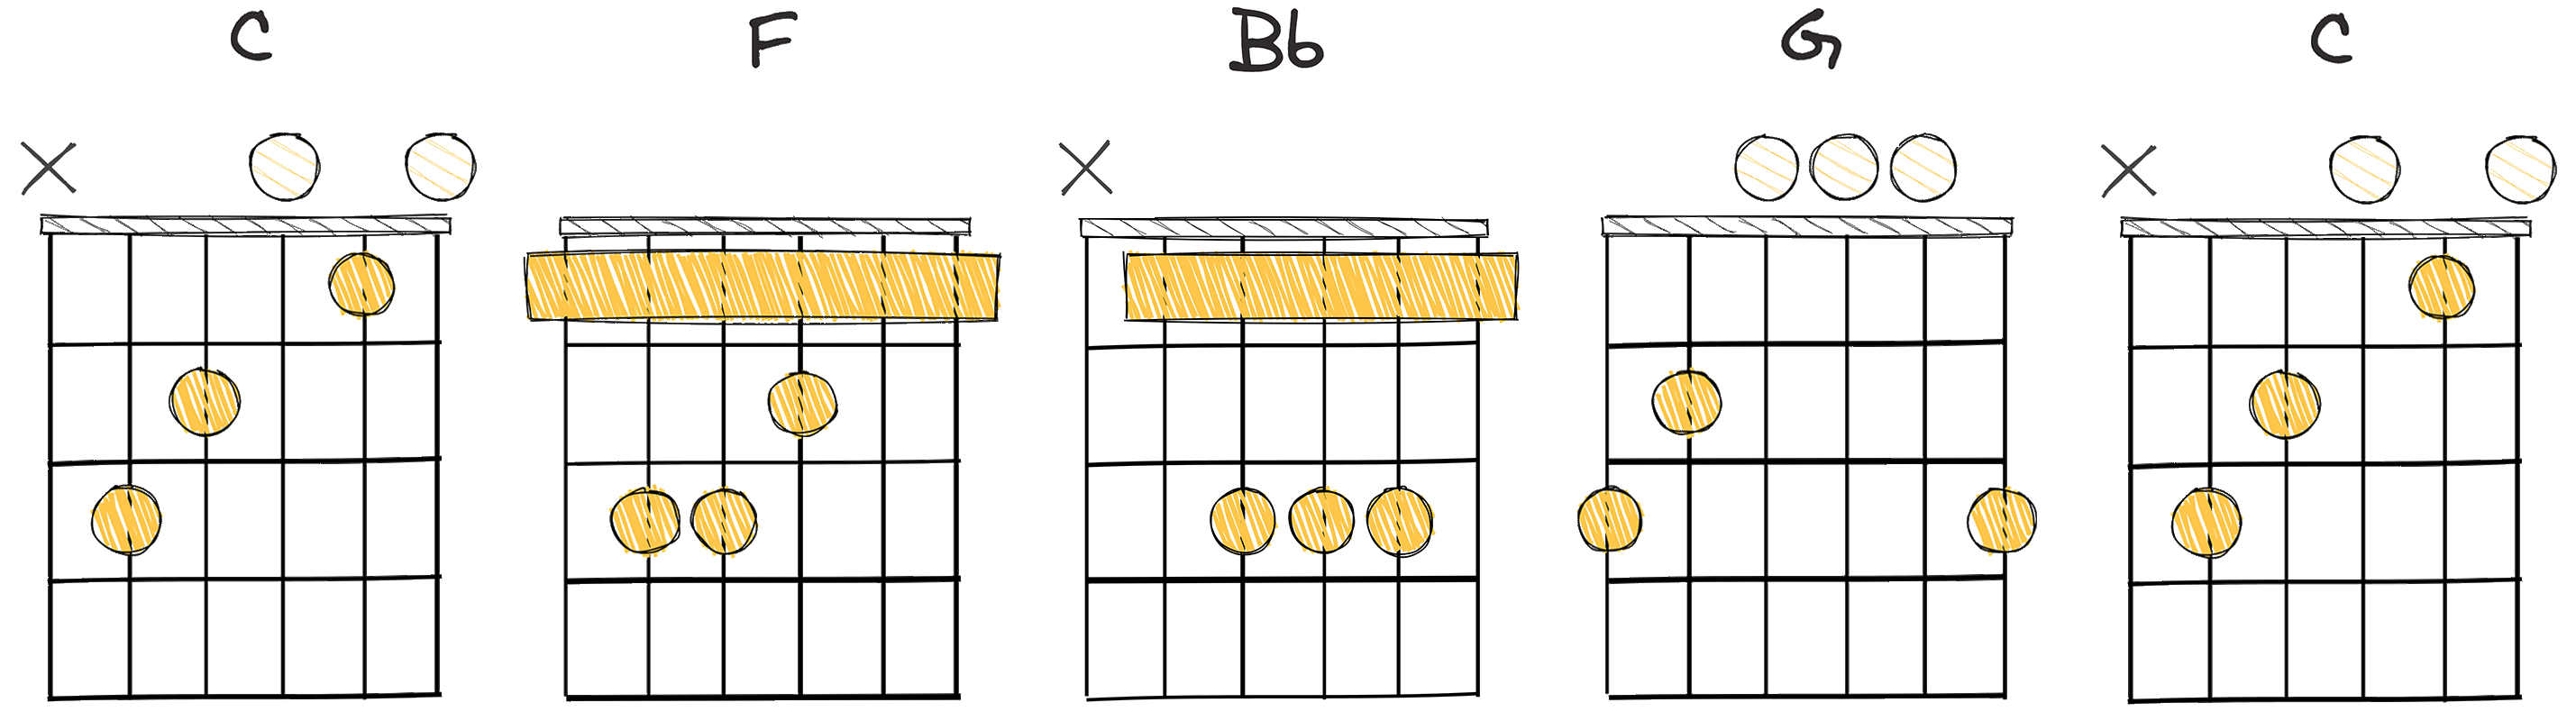 i - IV - bVII - V - i (1 - 4 - b7 - 5 - 1) chords diagram